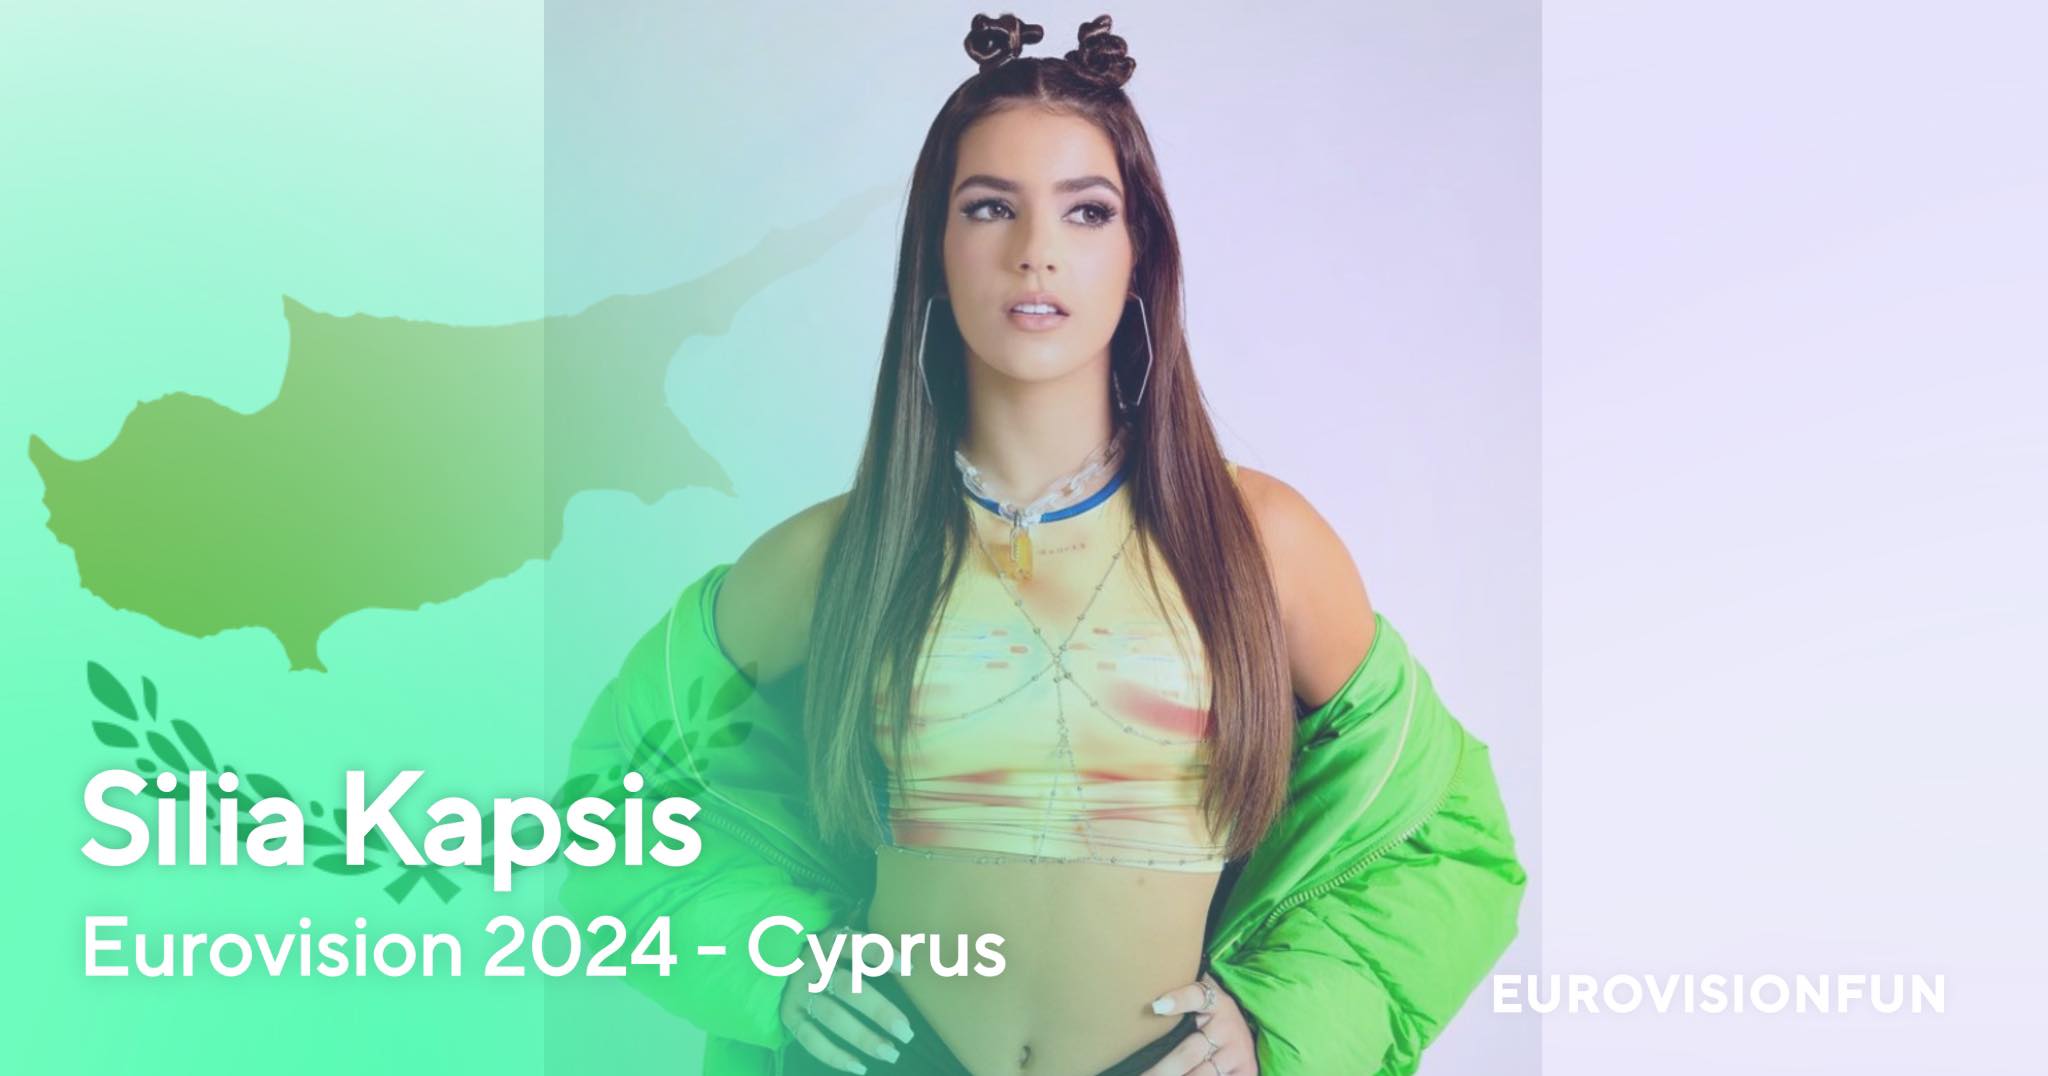 Eurovision 2024: Ποιο είναι το τραγούδι με το οποίο θα εκπροσωπηθεί η Κύπρος στο φετινό διαγωνισμό